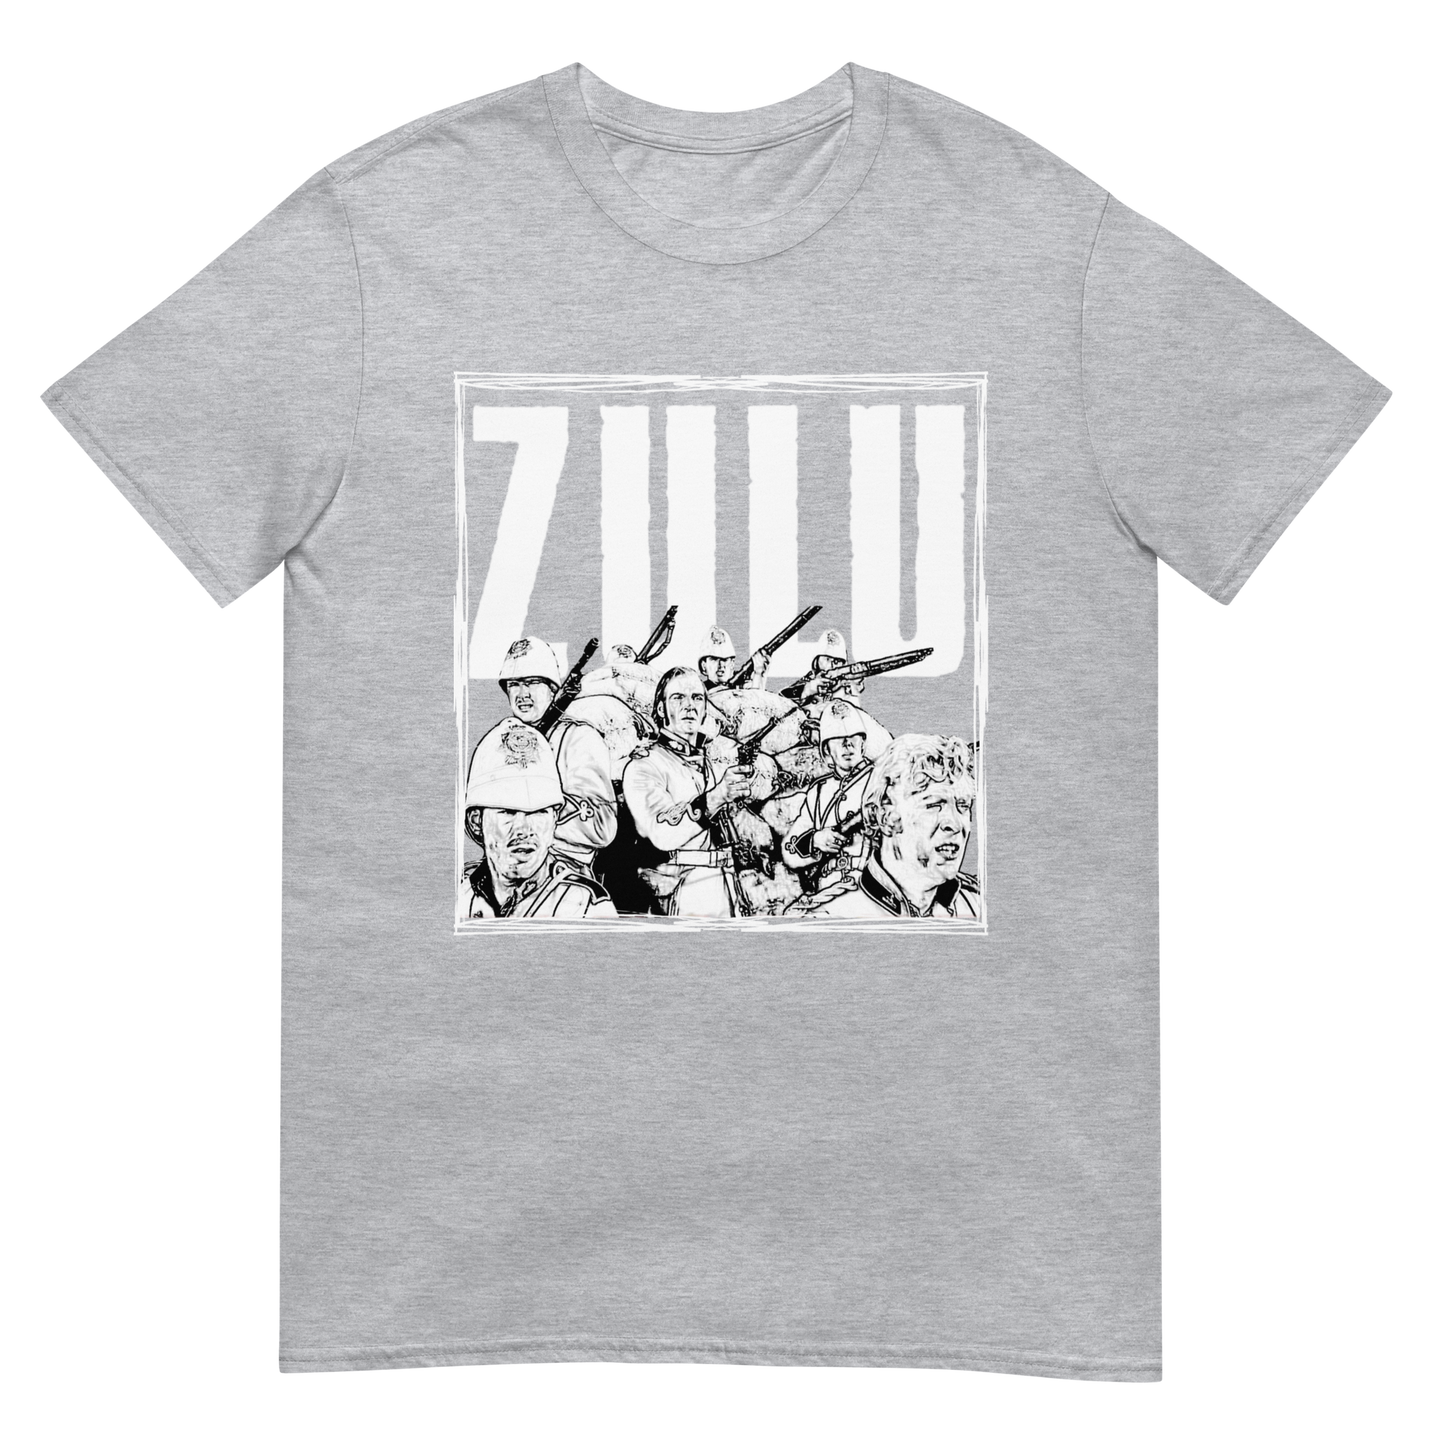 ZULU Final Stand Sketch (t-shirt)